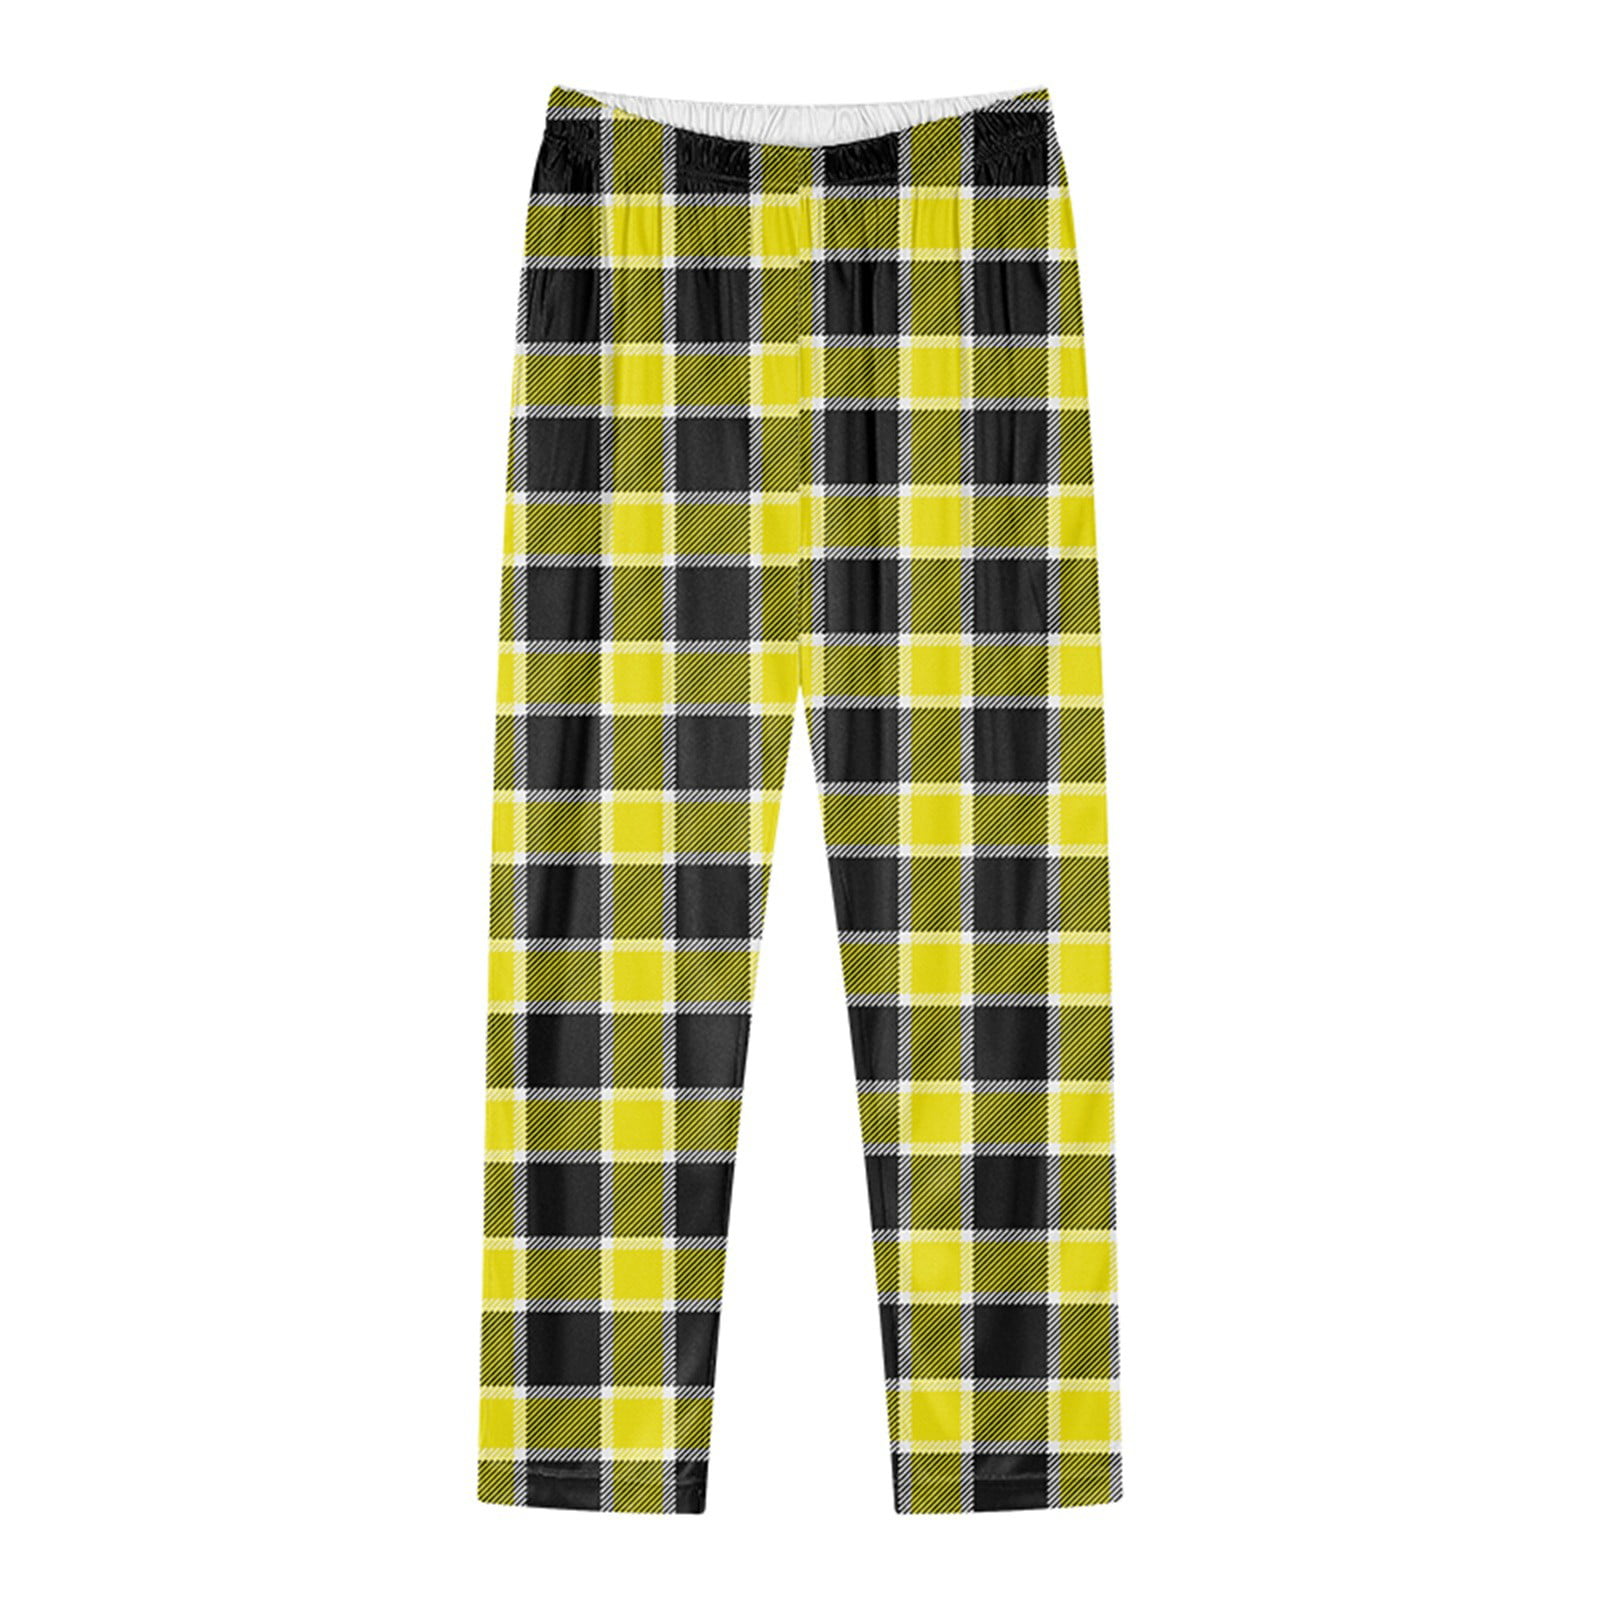 Aayomet Women'S Pants ComfortSoft EcoSmart Women's Open Bottom Leg  Sweatpants,Yellow XL 